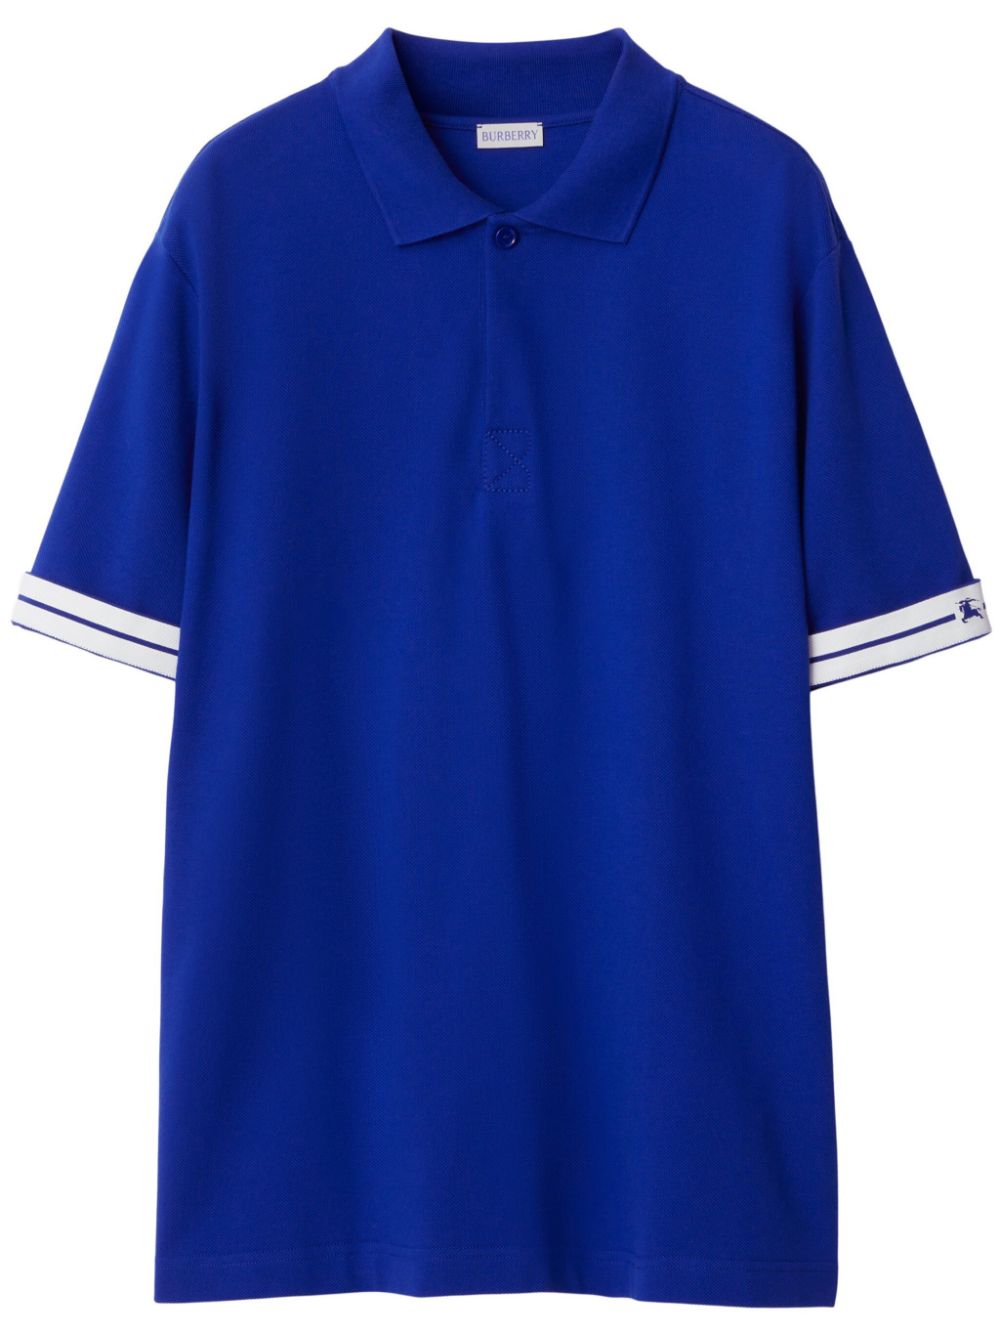 Burberry cotton piqué polo shirt - Blue